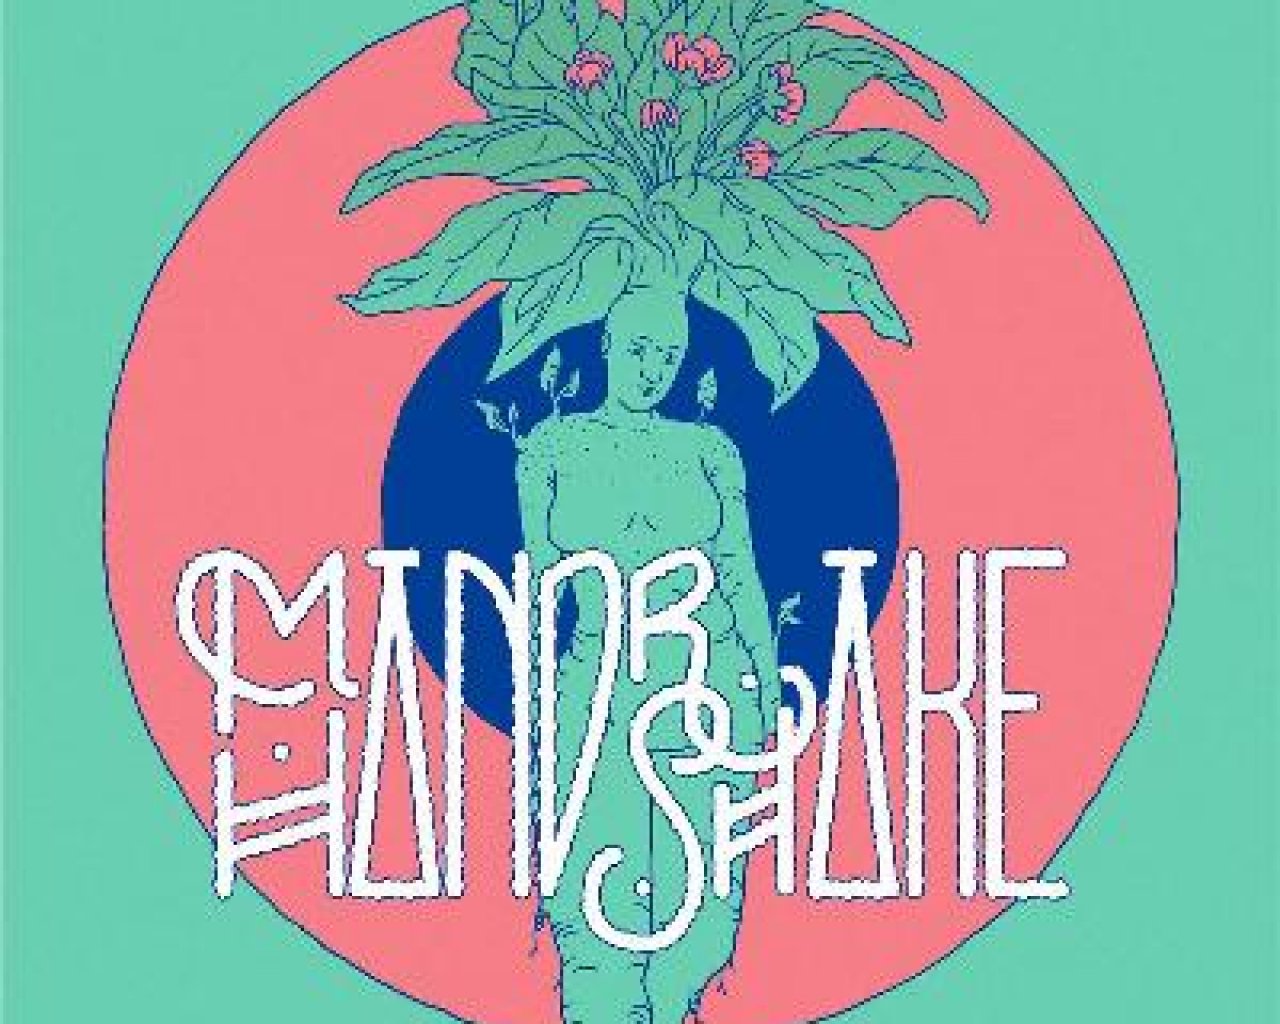 The Mandrake Handshake